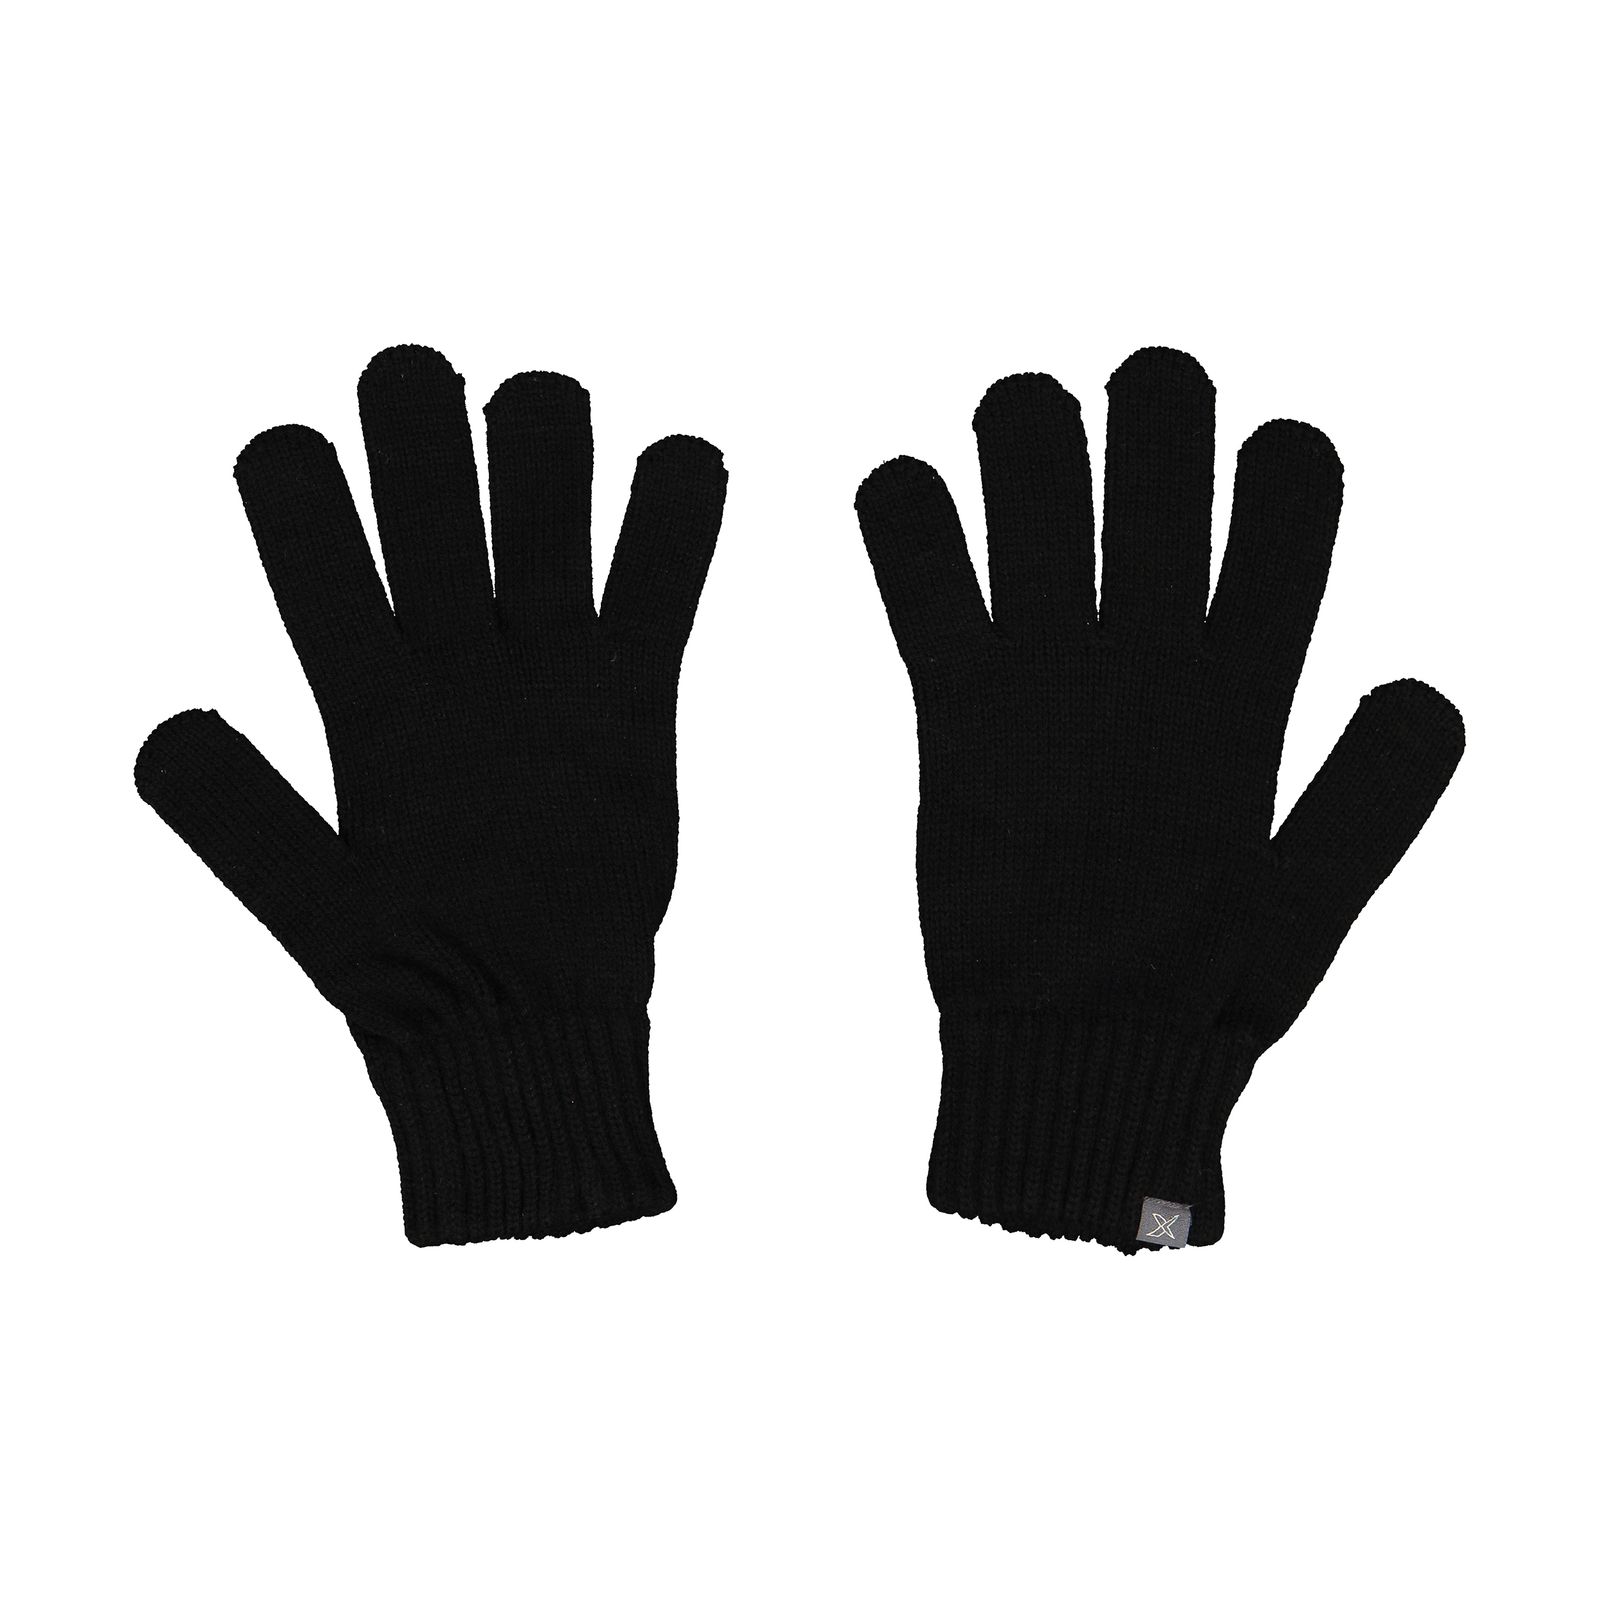 دستکش مردانه کینتیکس مدل 100223998 Black -  - 2